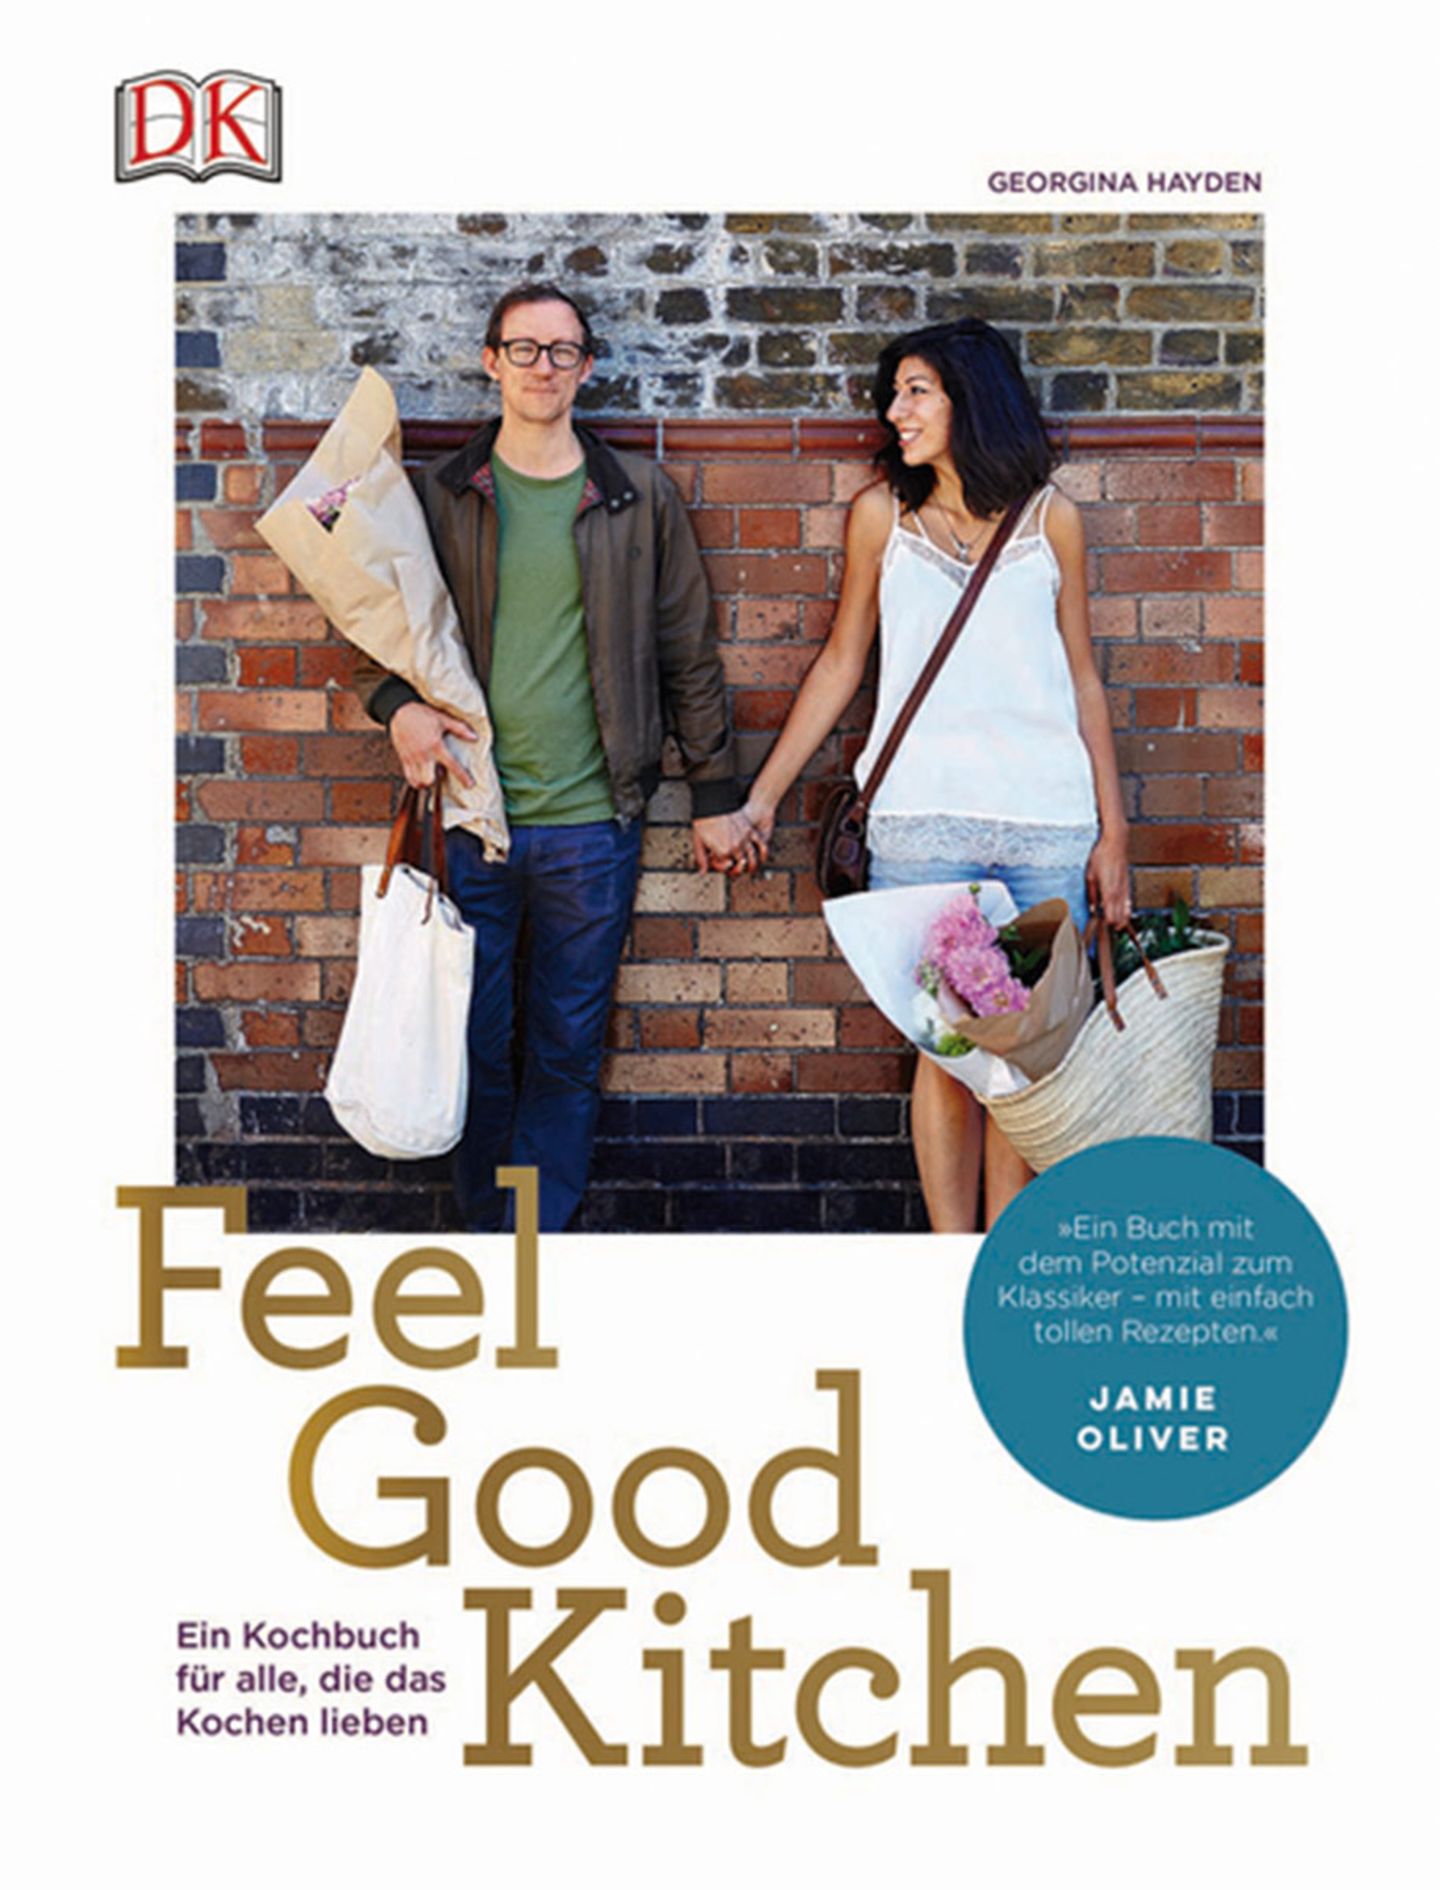 Kochbuch von Georgina Hayden "Feel Good Kitchen"